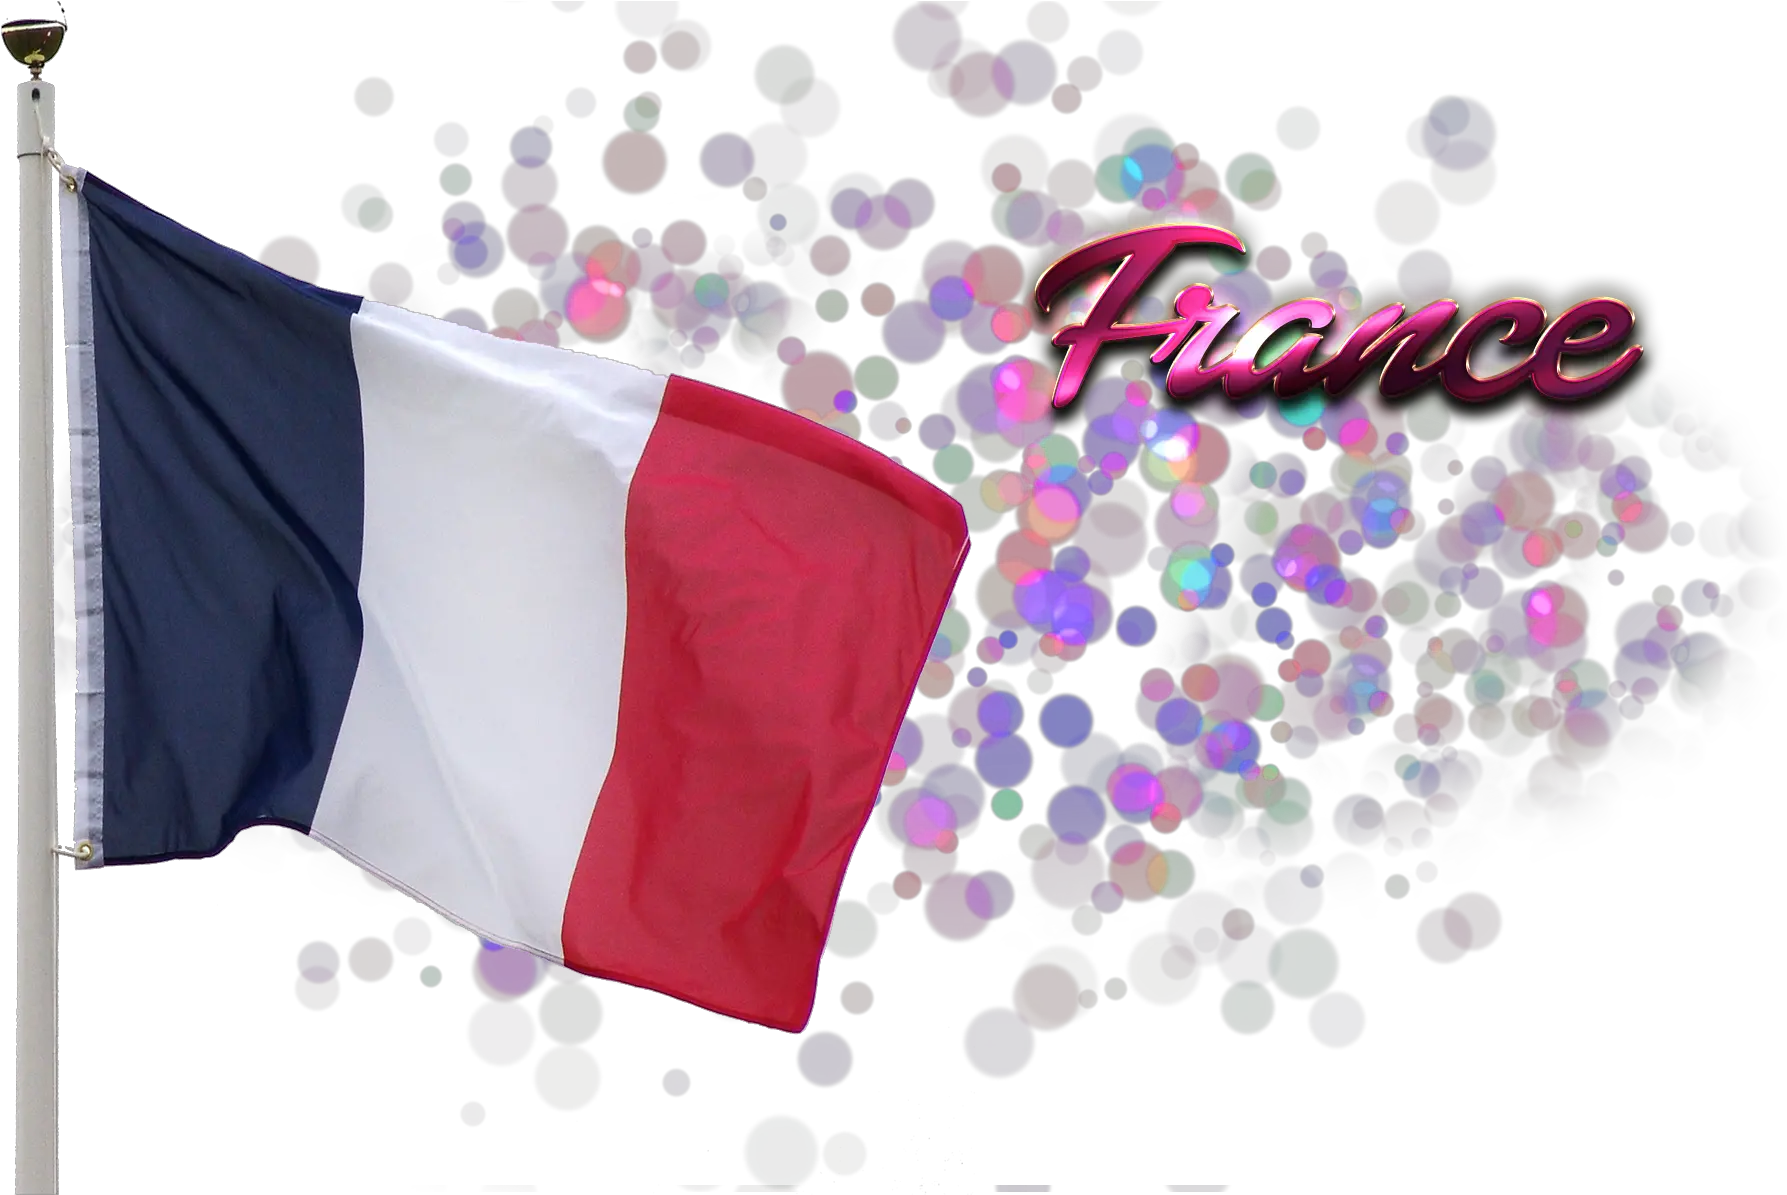 France Flag Png Free Images